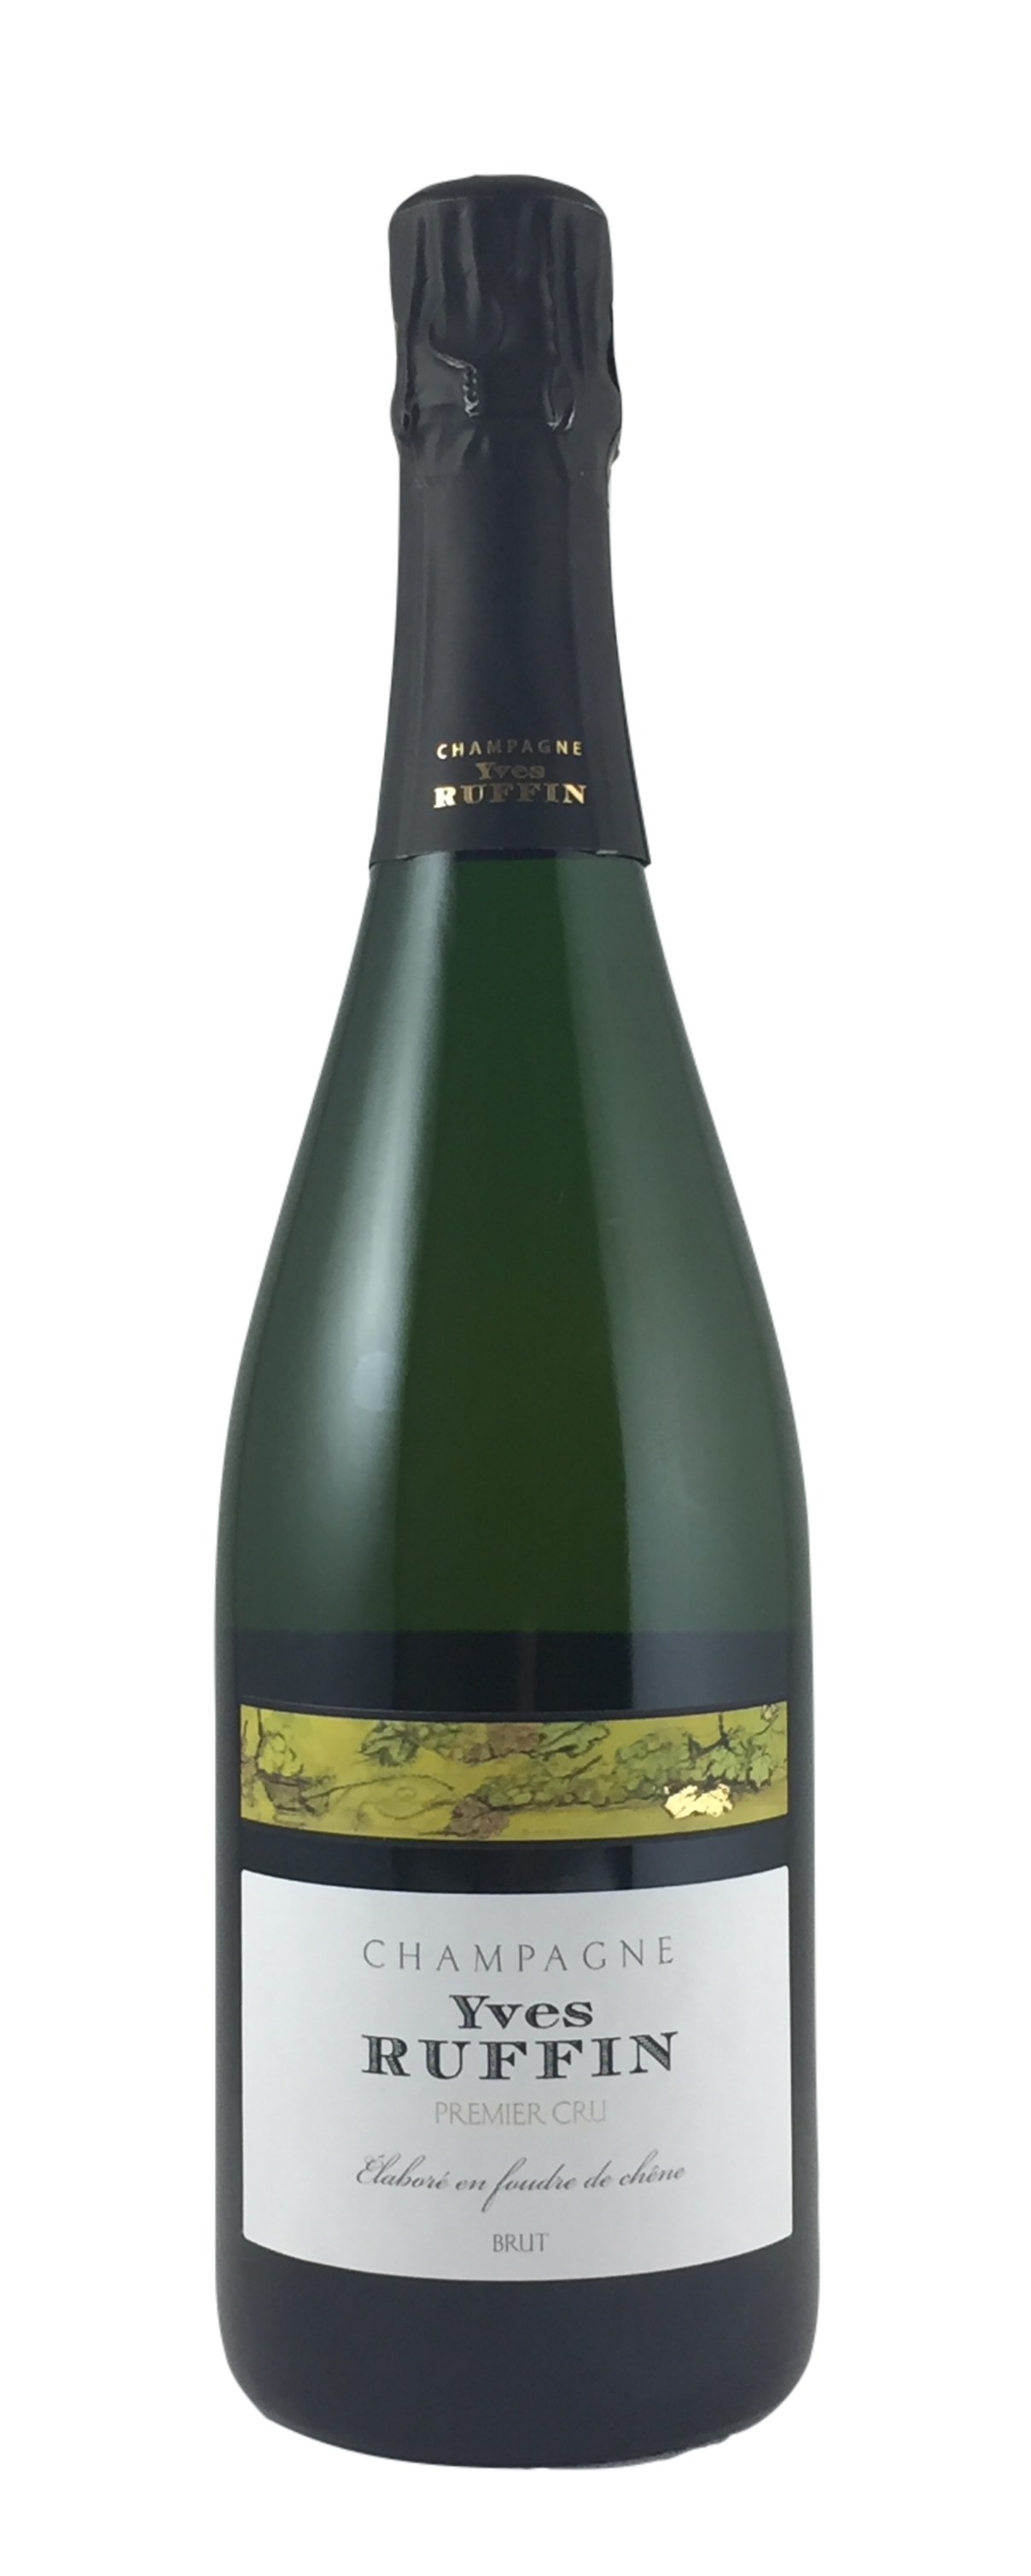  Champagne Yves Ruffin - Premier Cru brut